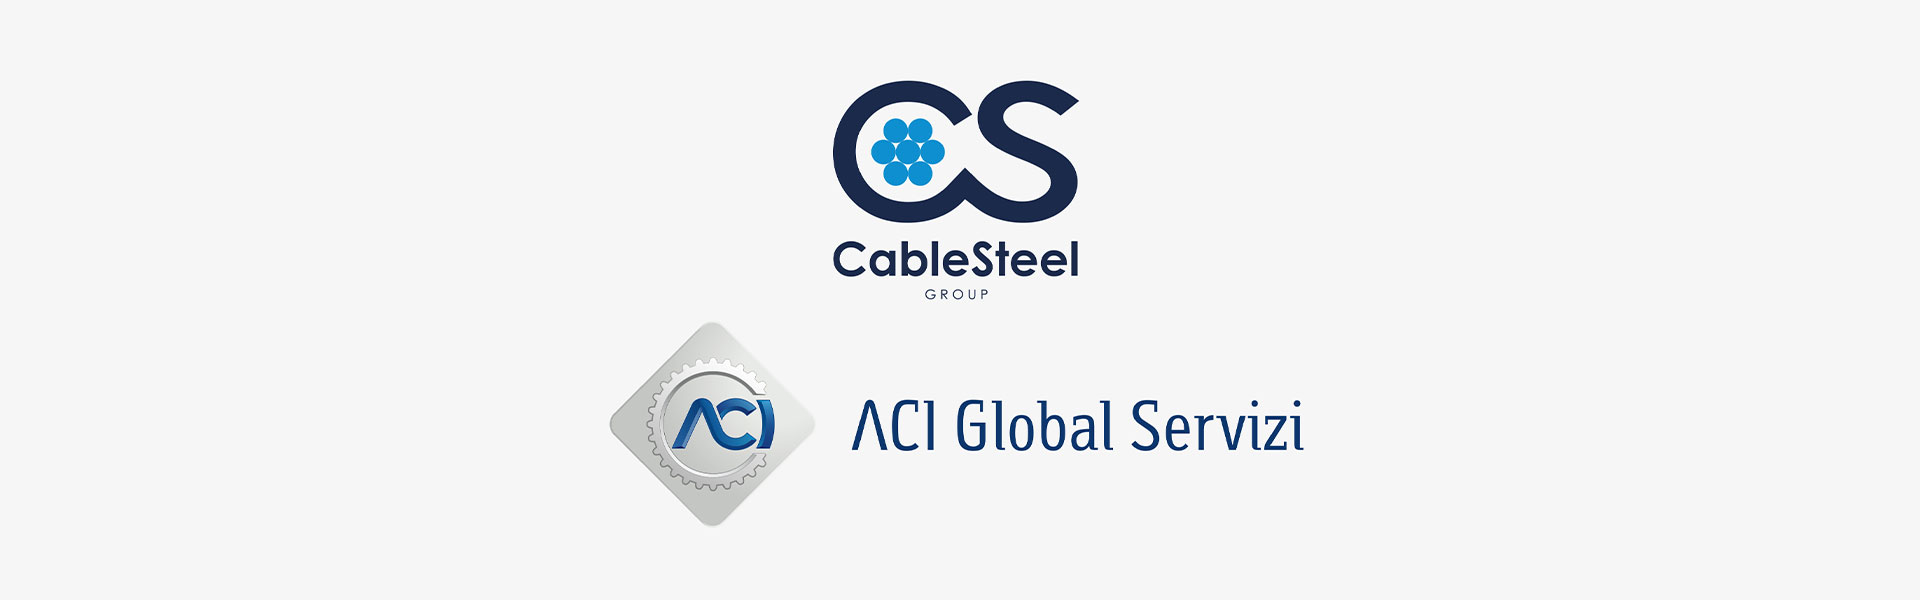 La nostra divisione CABLES è partner di ACI Global Servizi